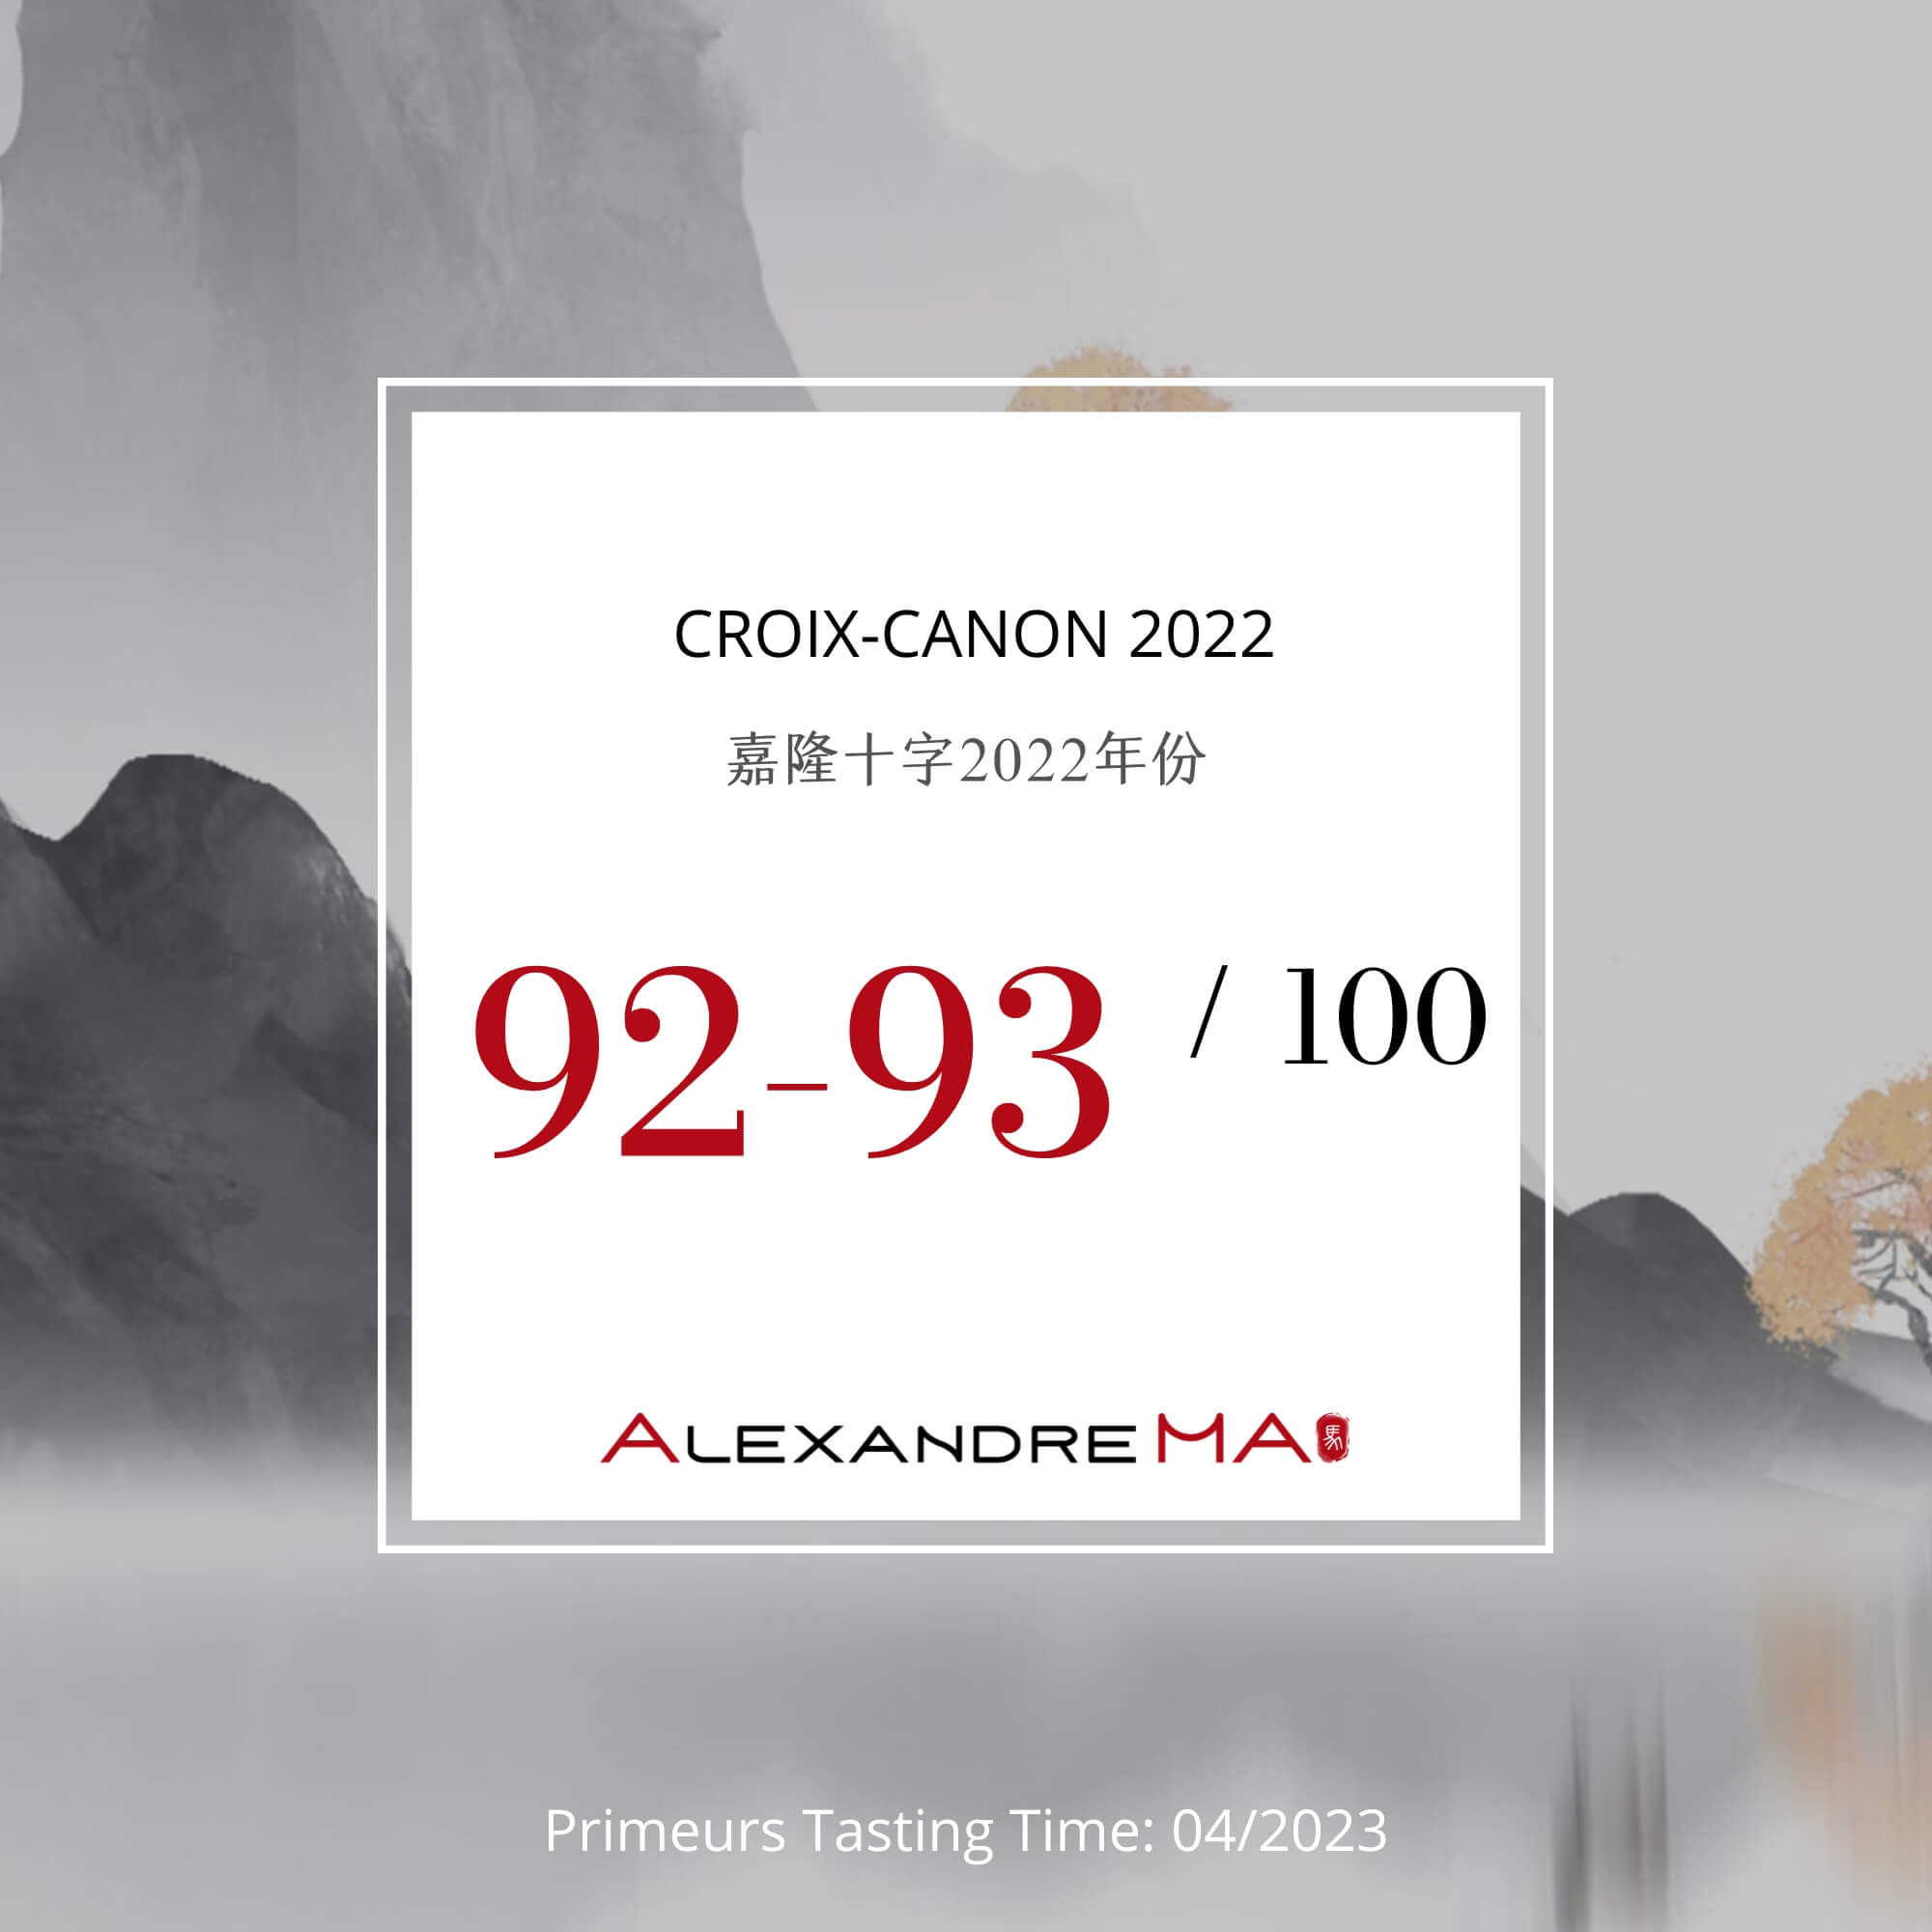 Croix-Canon 2022 Primeurs - Alexandre MA